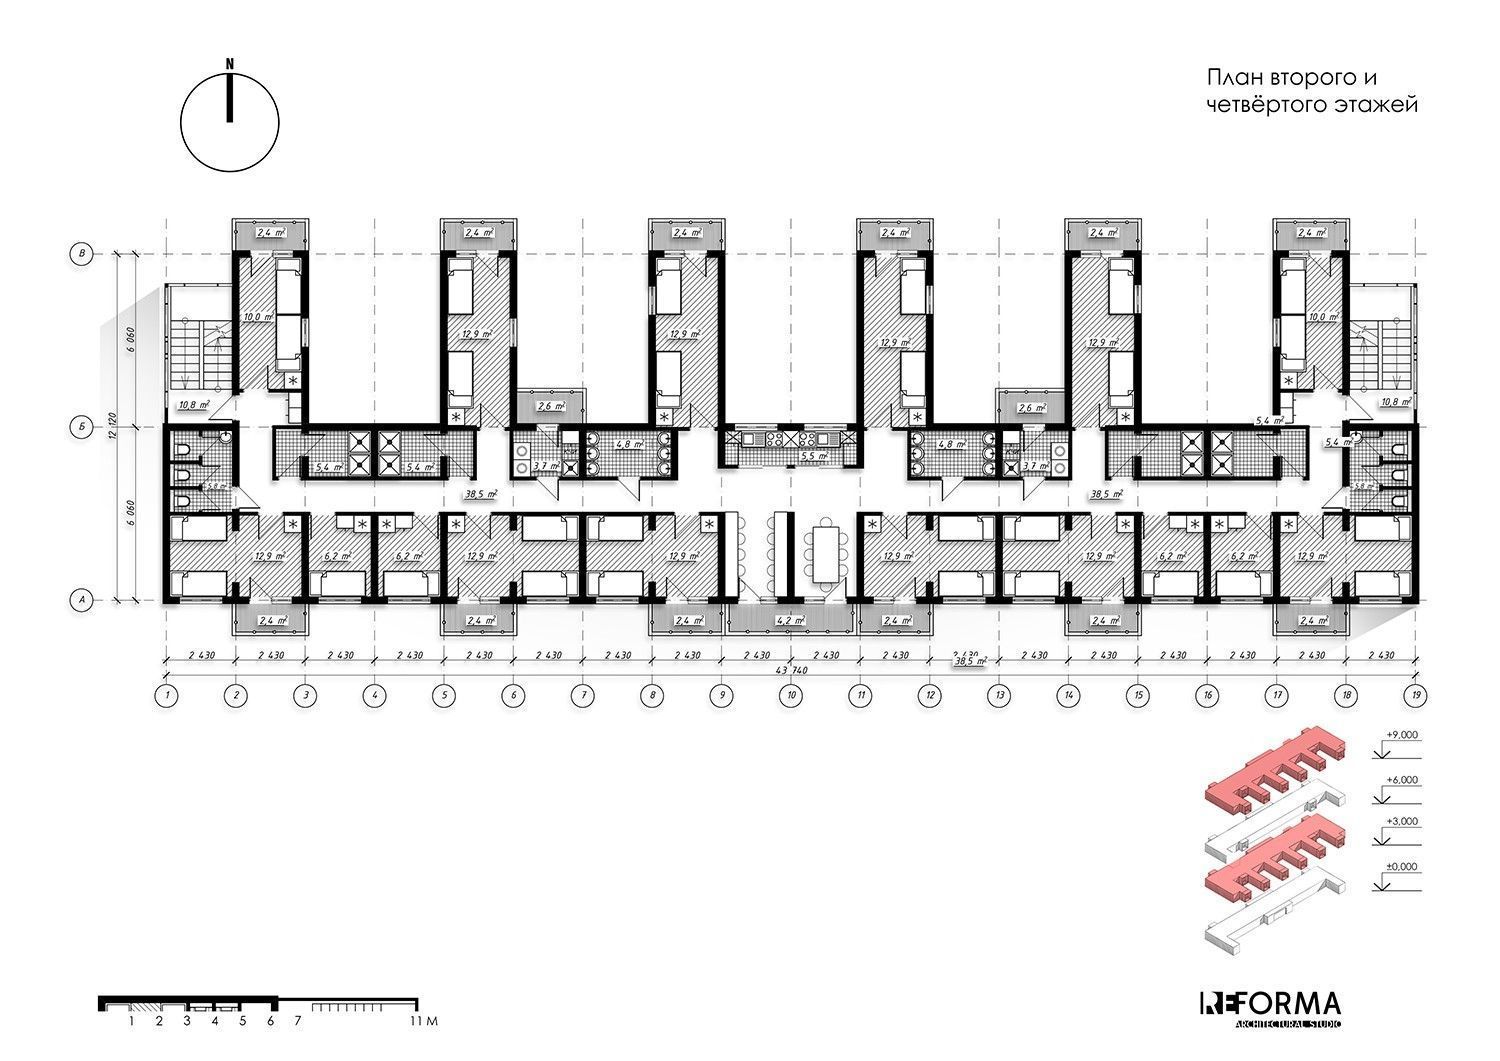 Архитектурный план общежития